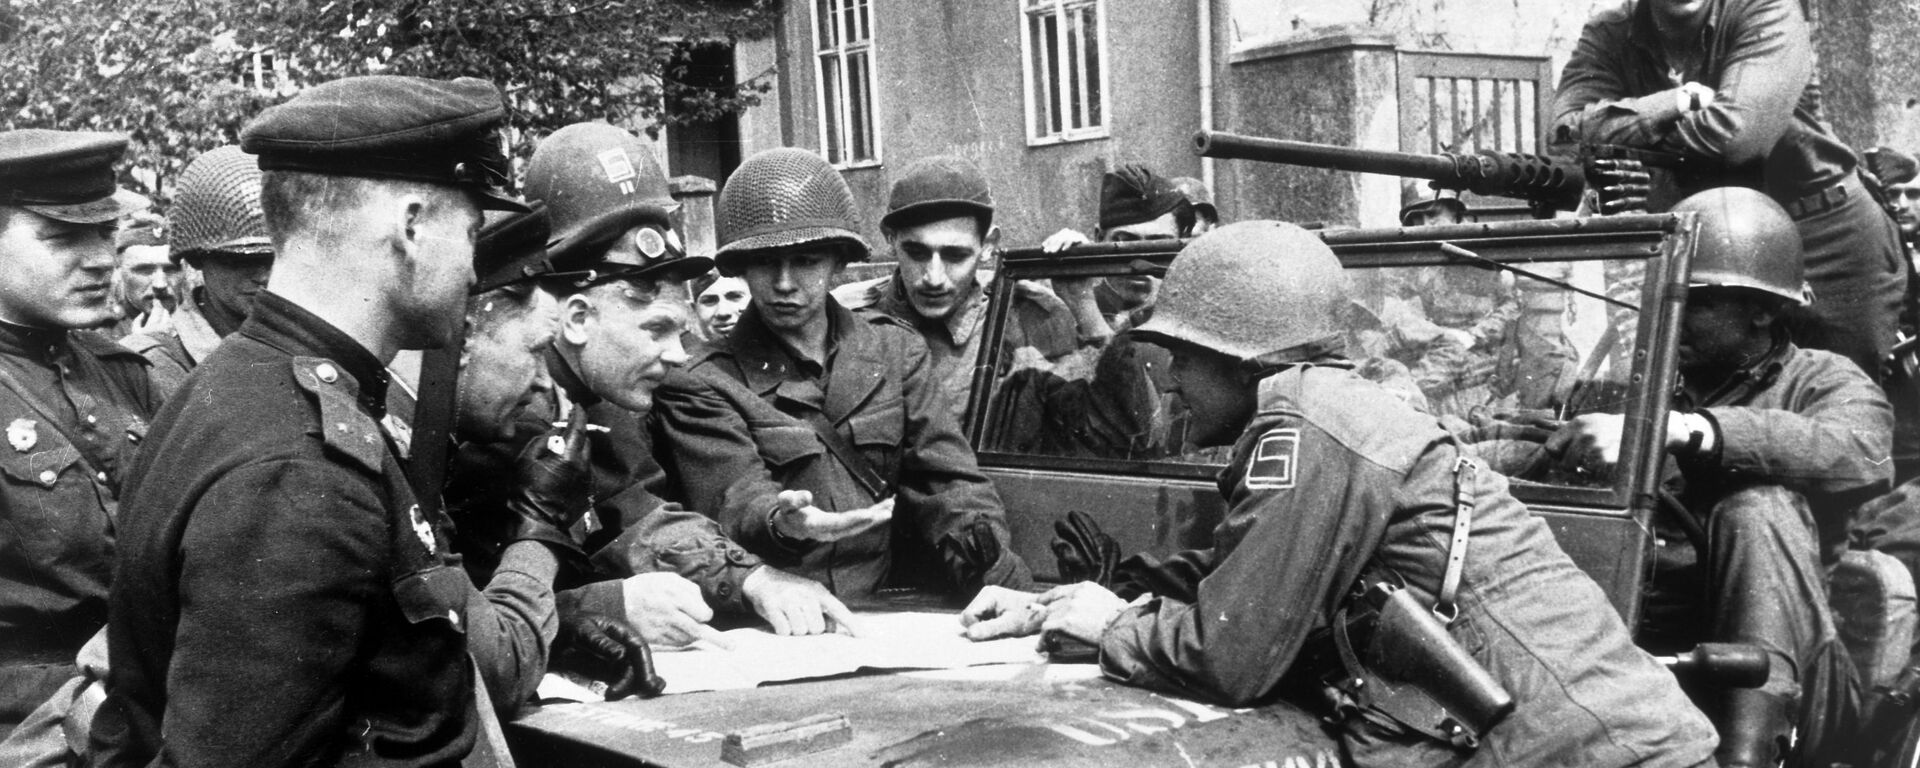 25 апреля 1945 года в районе Торгау на Эльбе войска 1-го Украинского фронта встретились с войсками 1-й армии США. - Sputnik Latvija, 1920, 05.05.2020